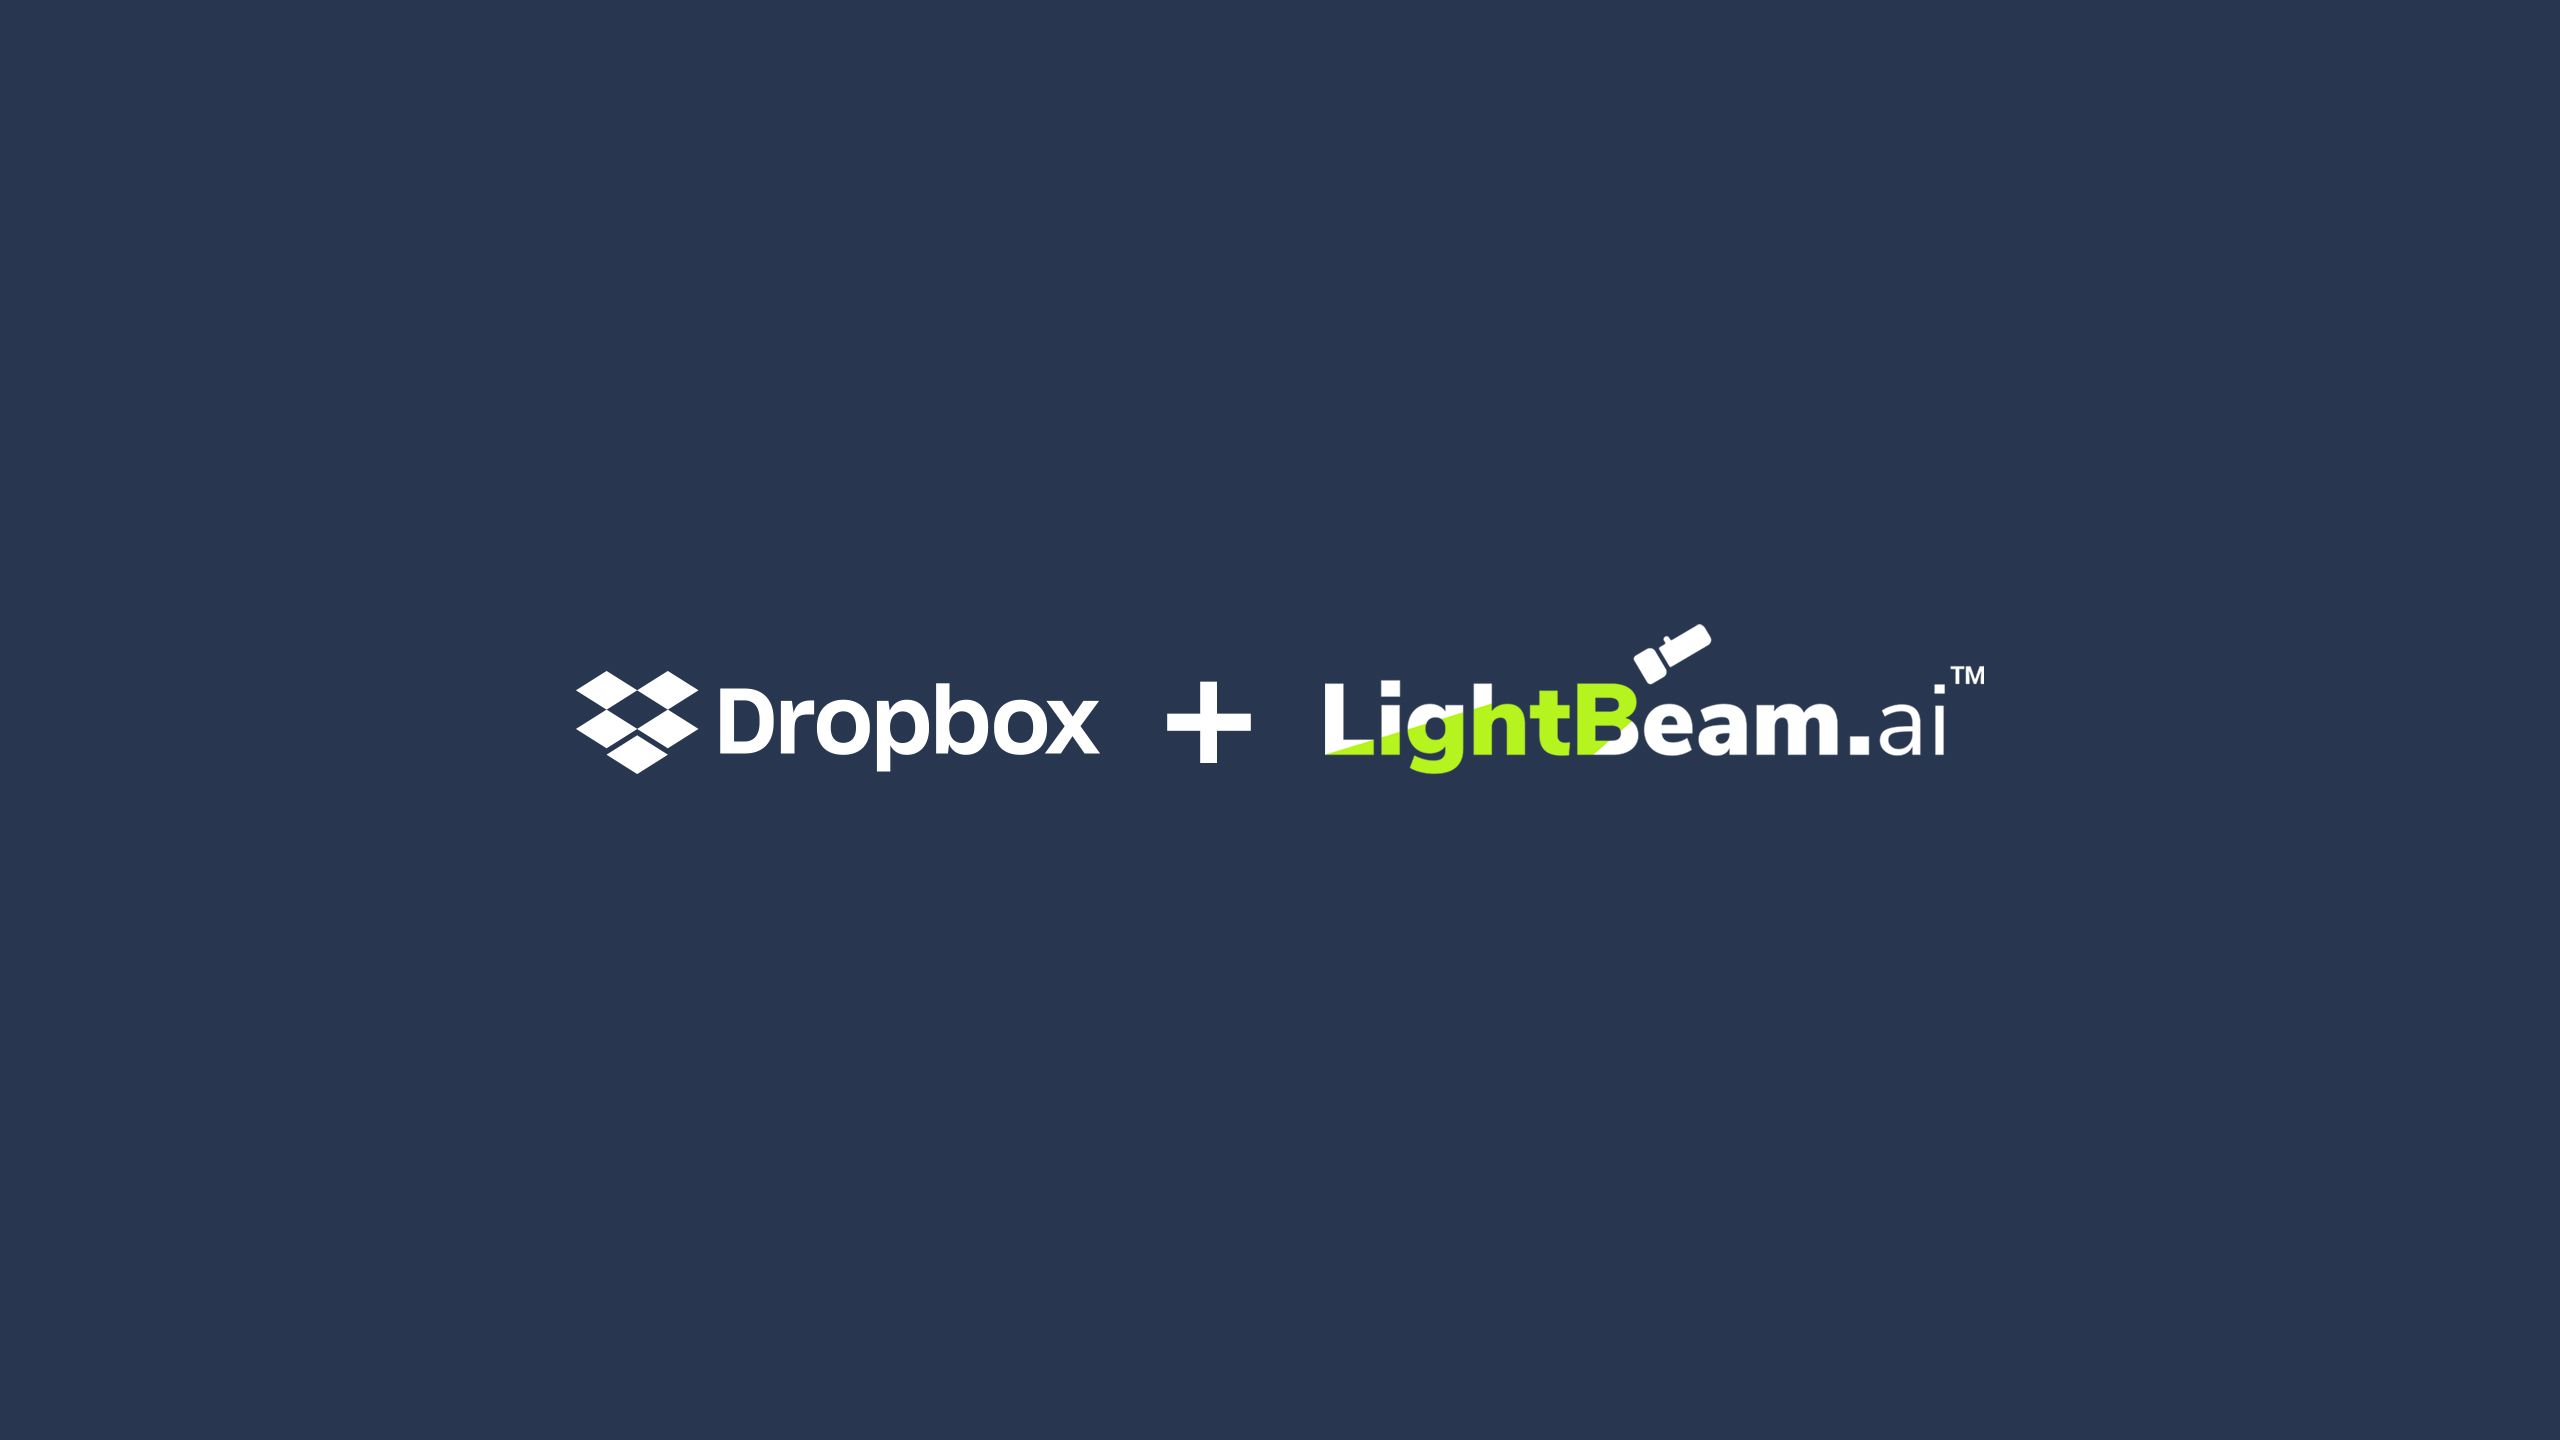 การจัดวางโลโก้ Dropbox และโลโก้ LightBeam.ai